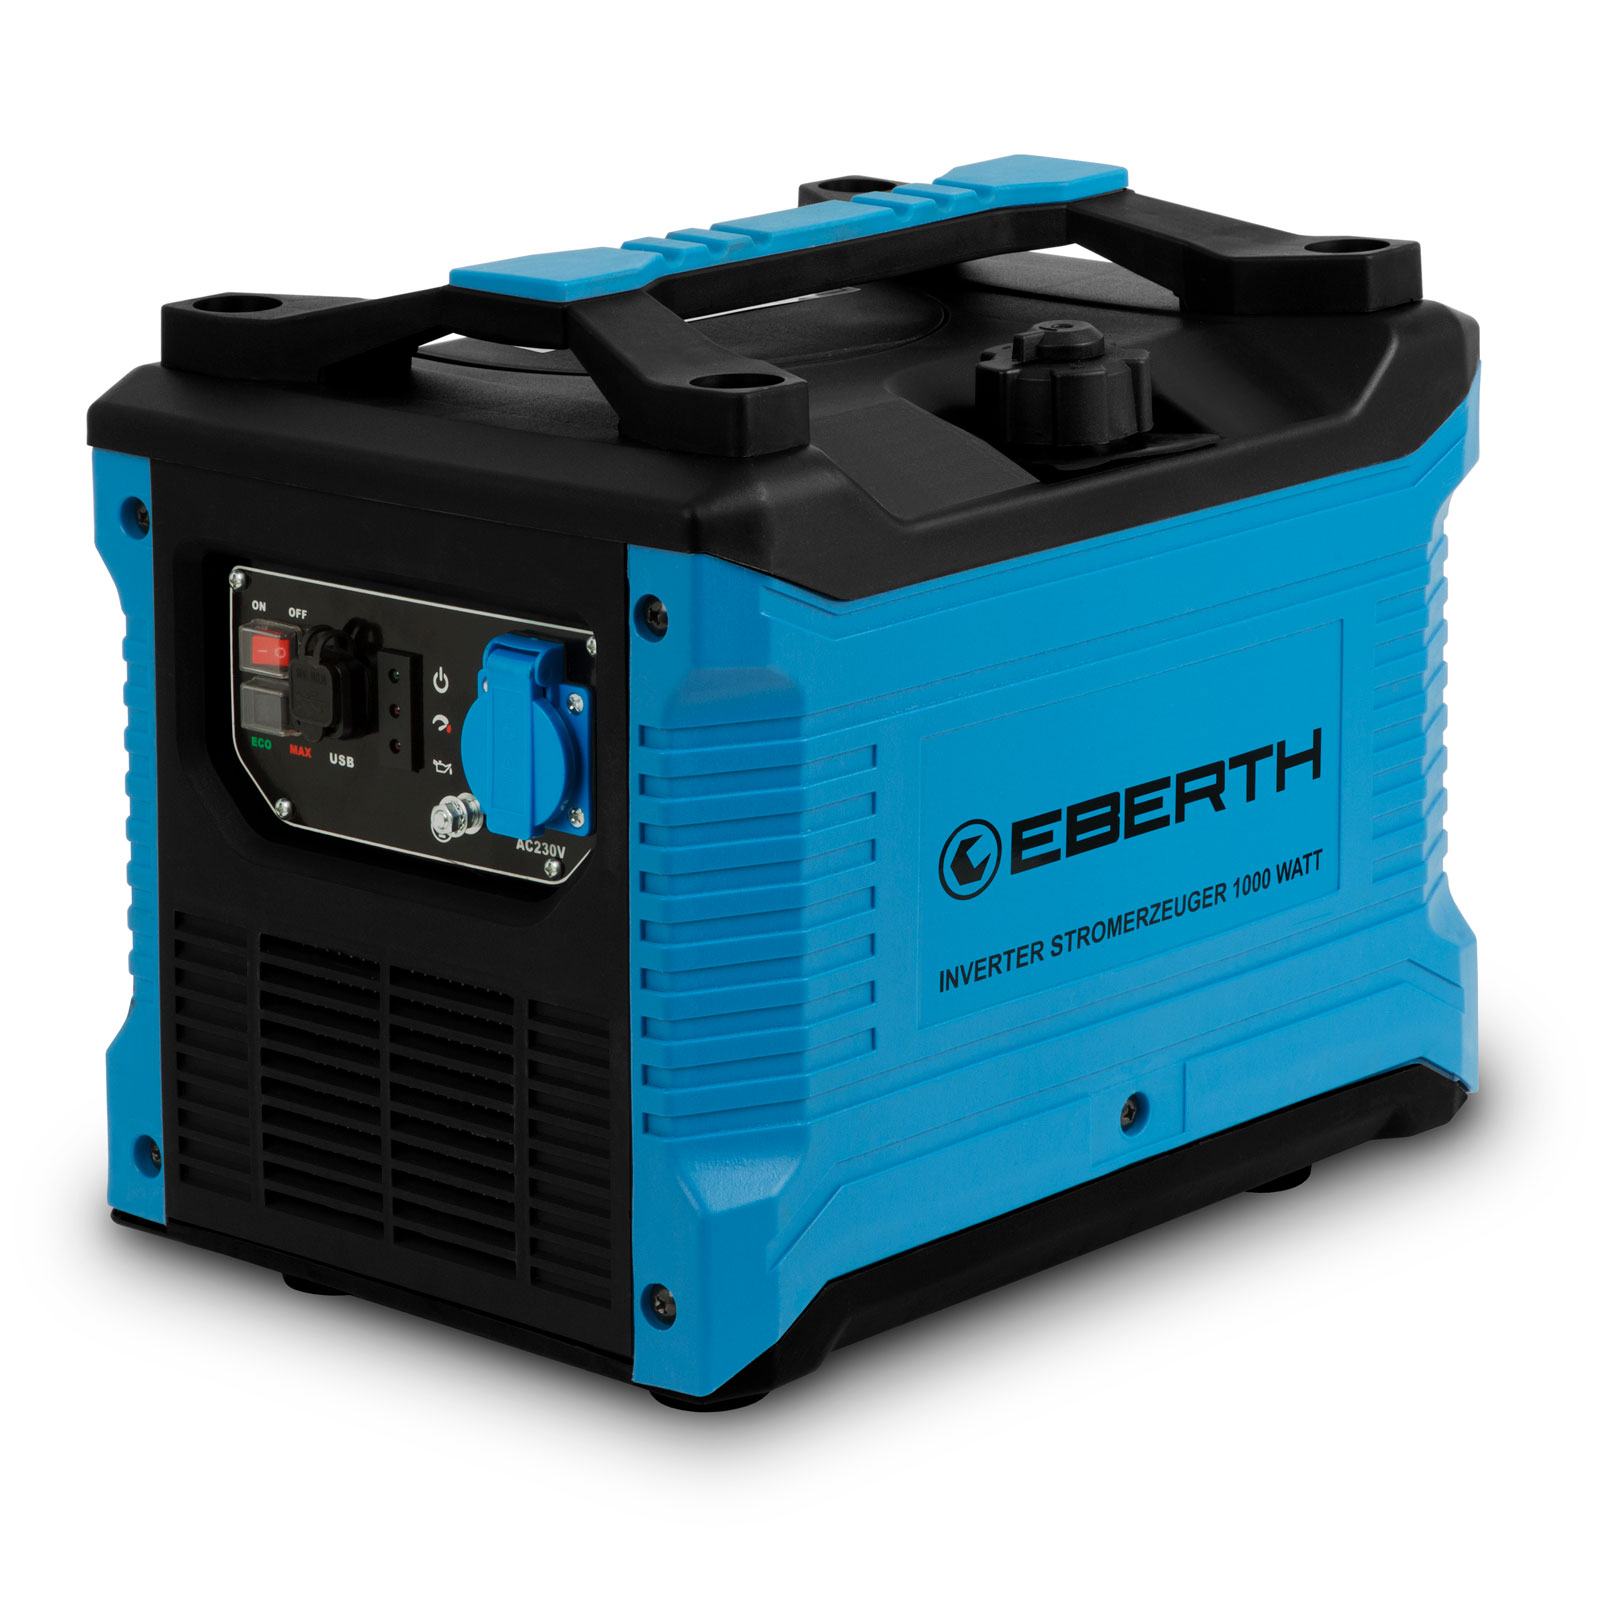 EBERTH 1000 Watt Inverter Stromerzeuger, Notstromaggregat, 2PS